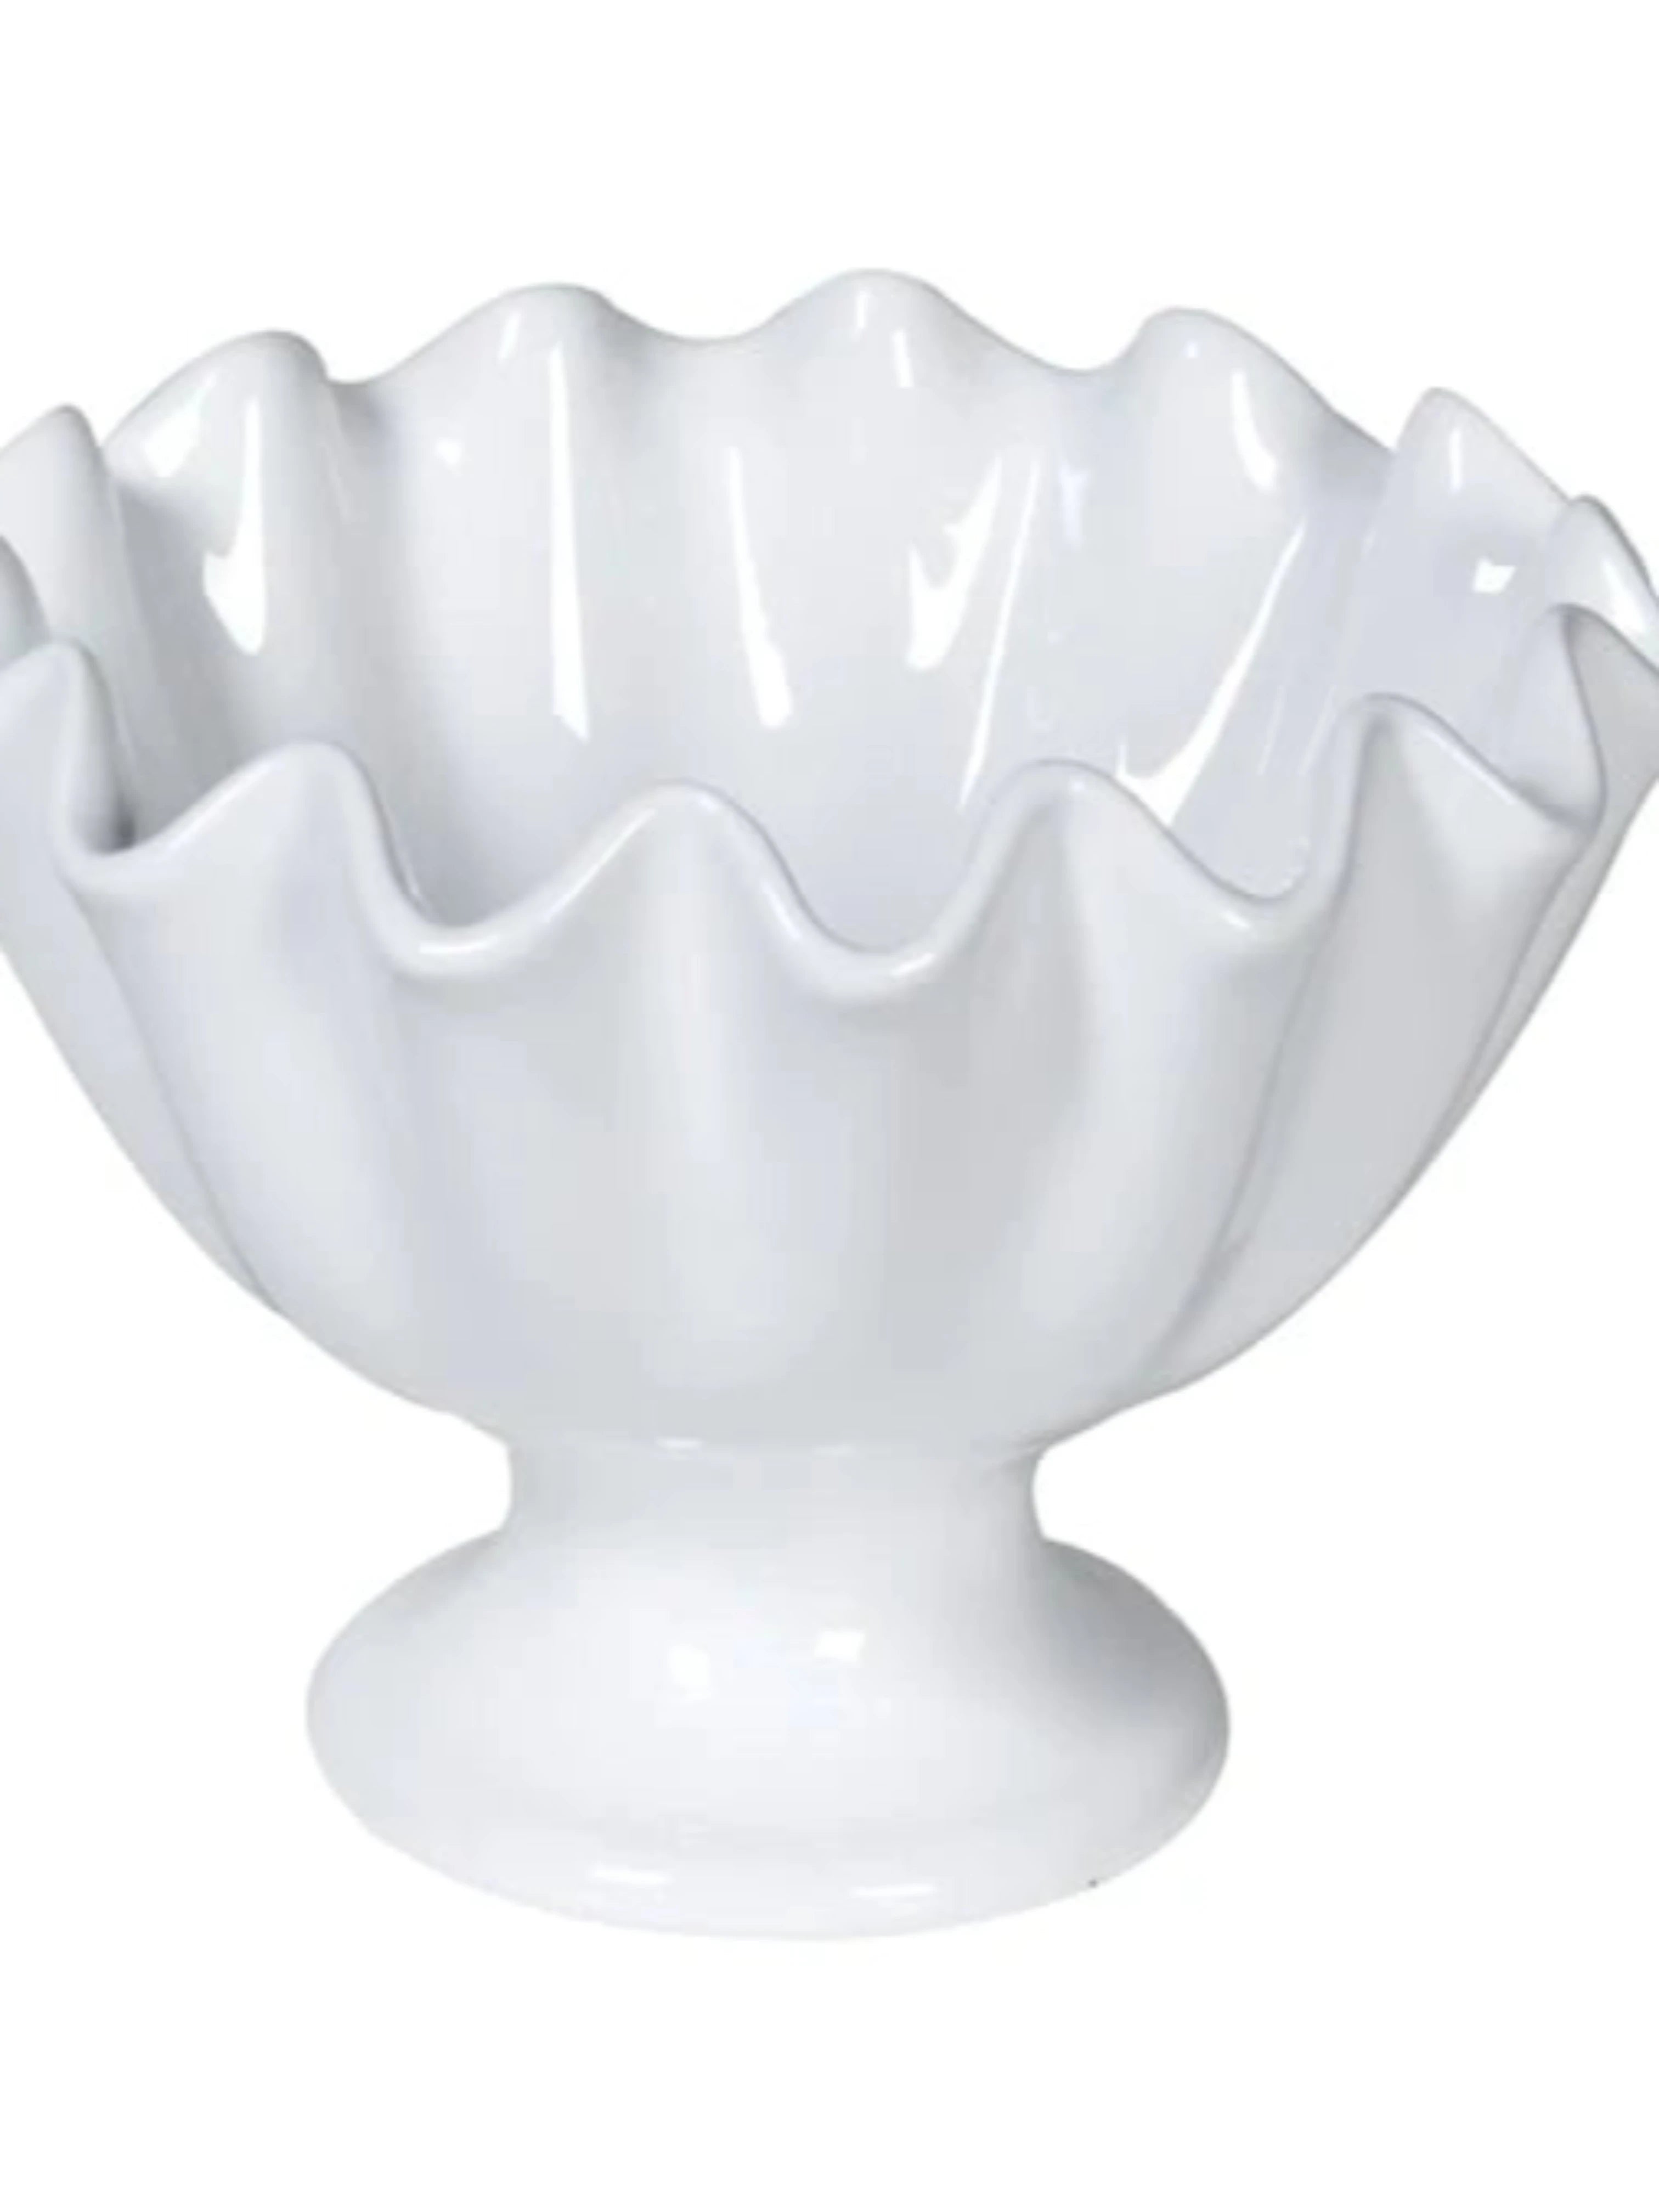 White Ruffled Ceramic Bowl